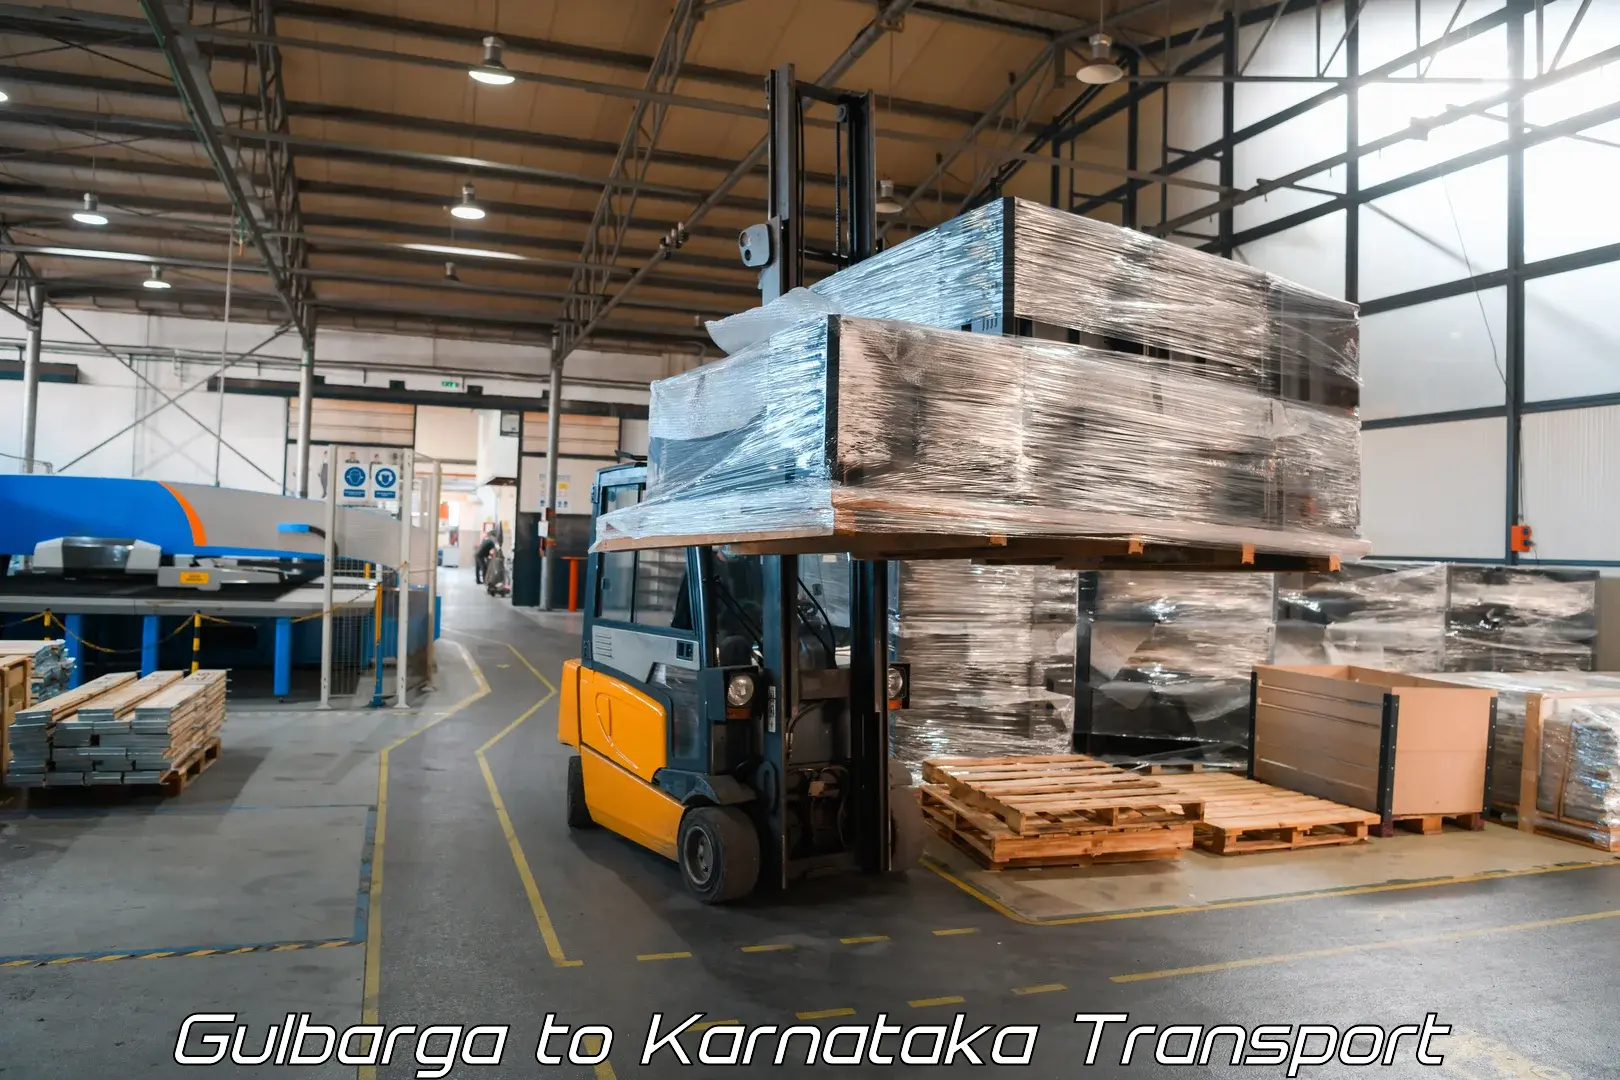 Shipping partner Gulbarga to Byadagi